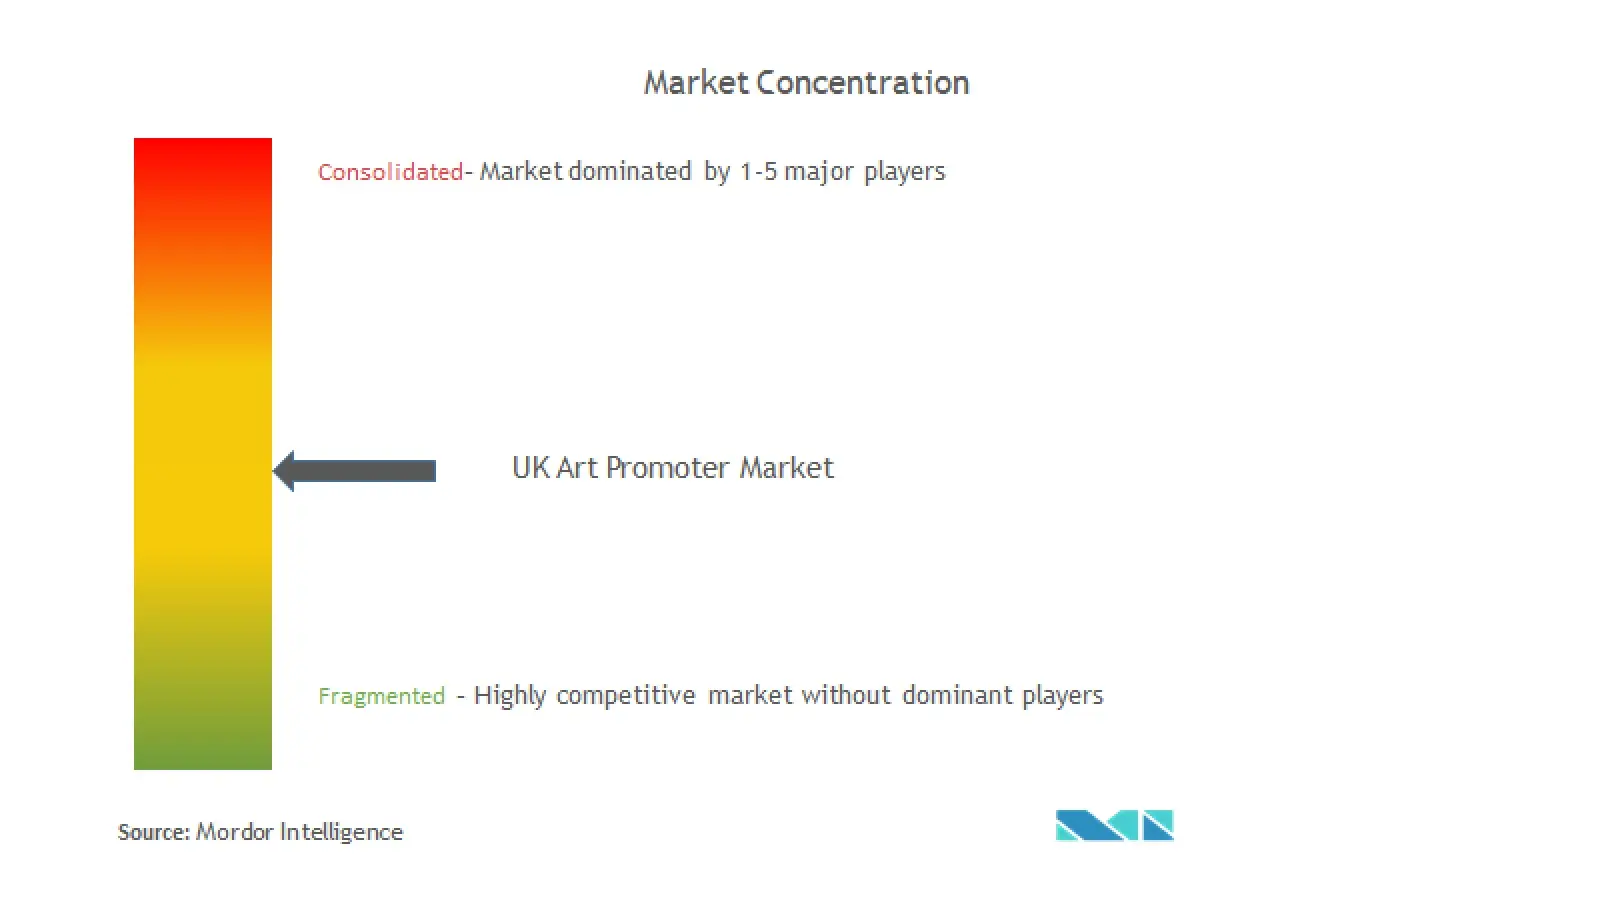 UK Arts Promoter Market Concentration